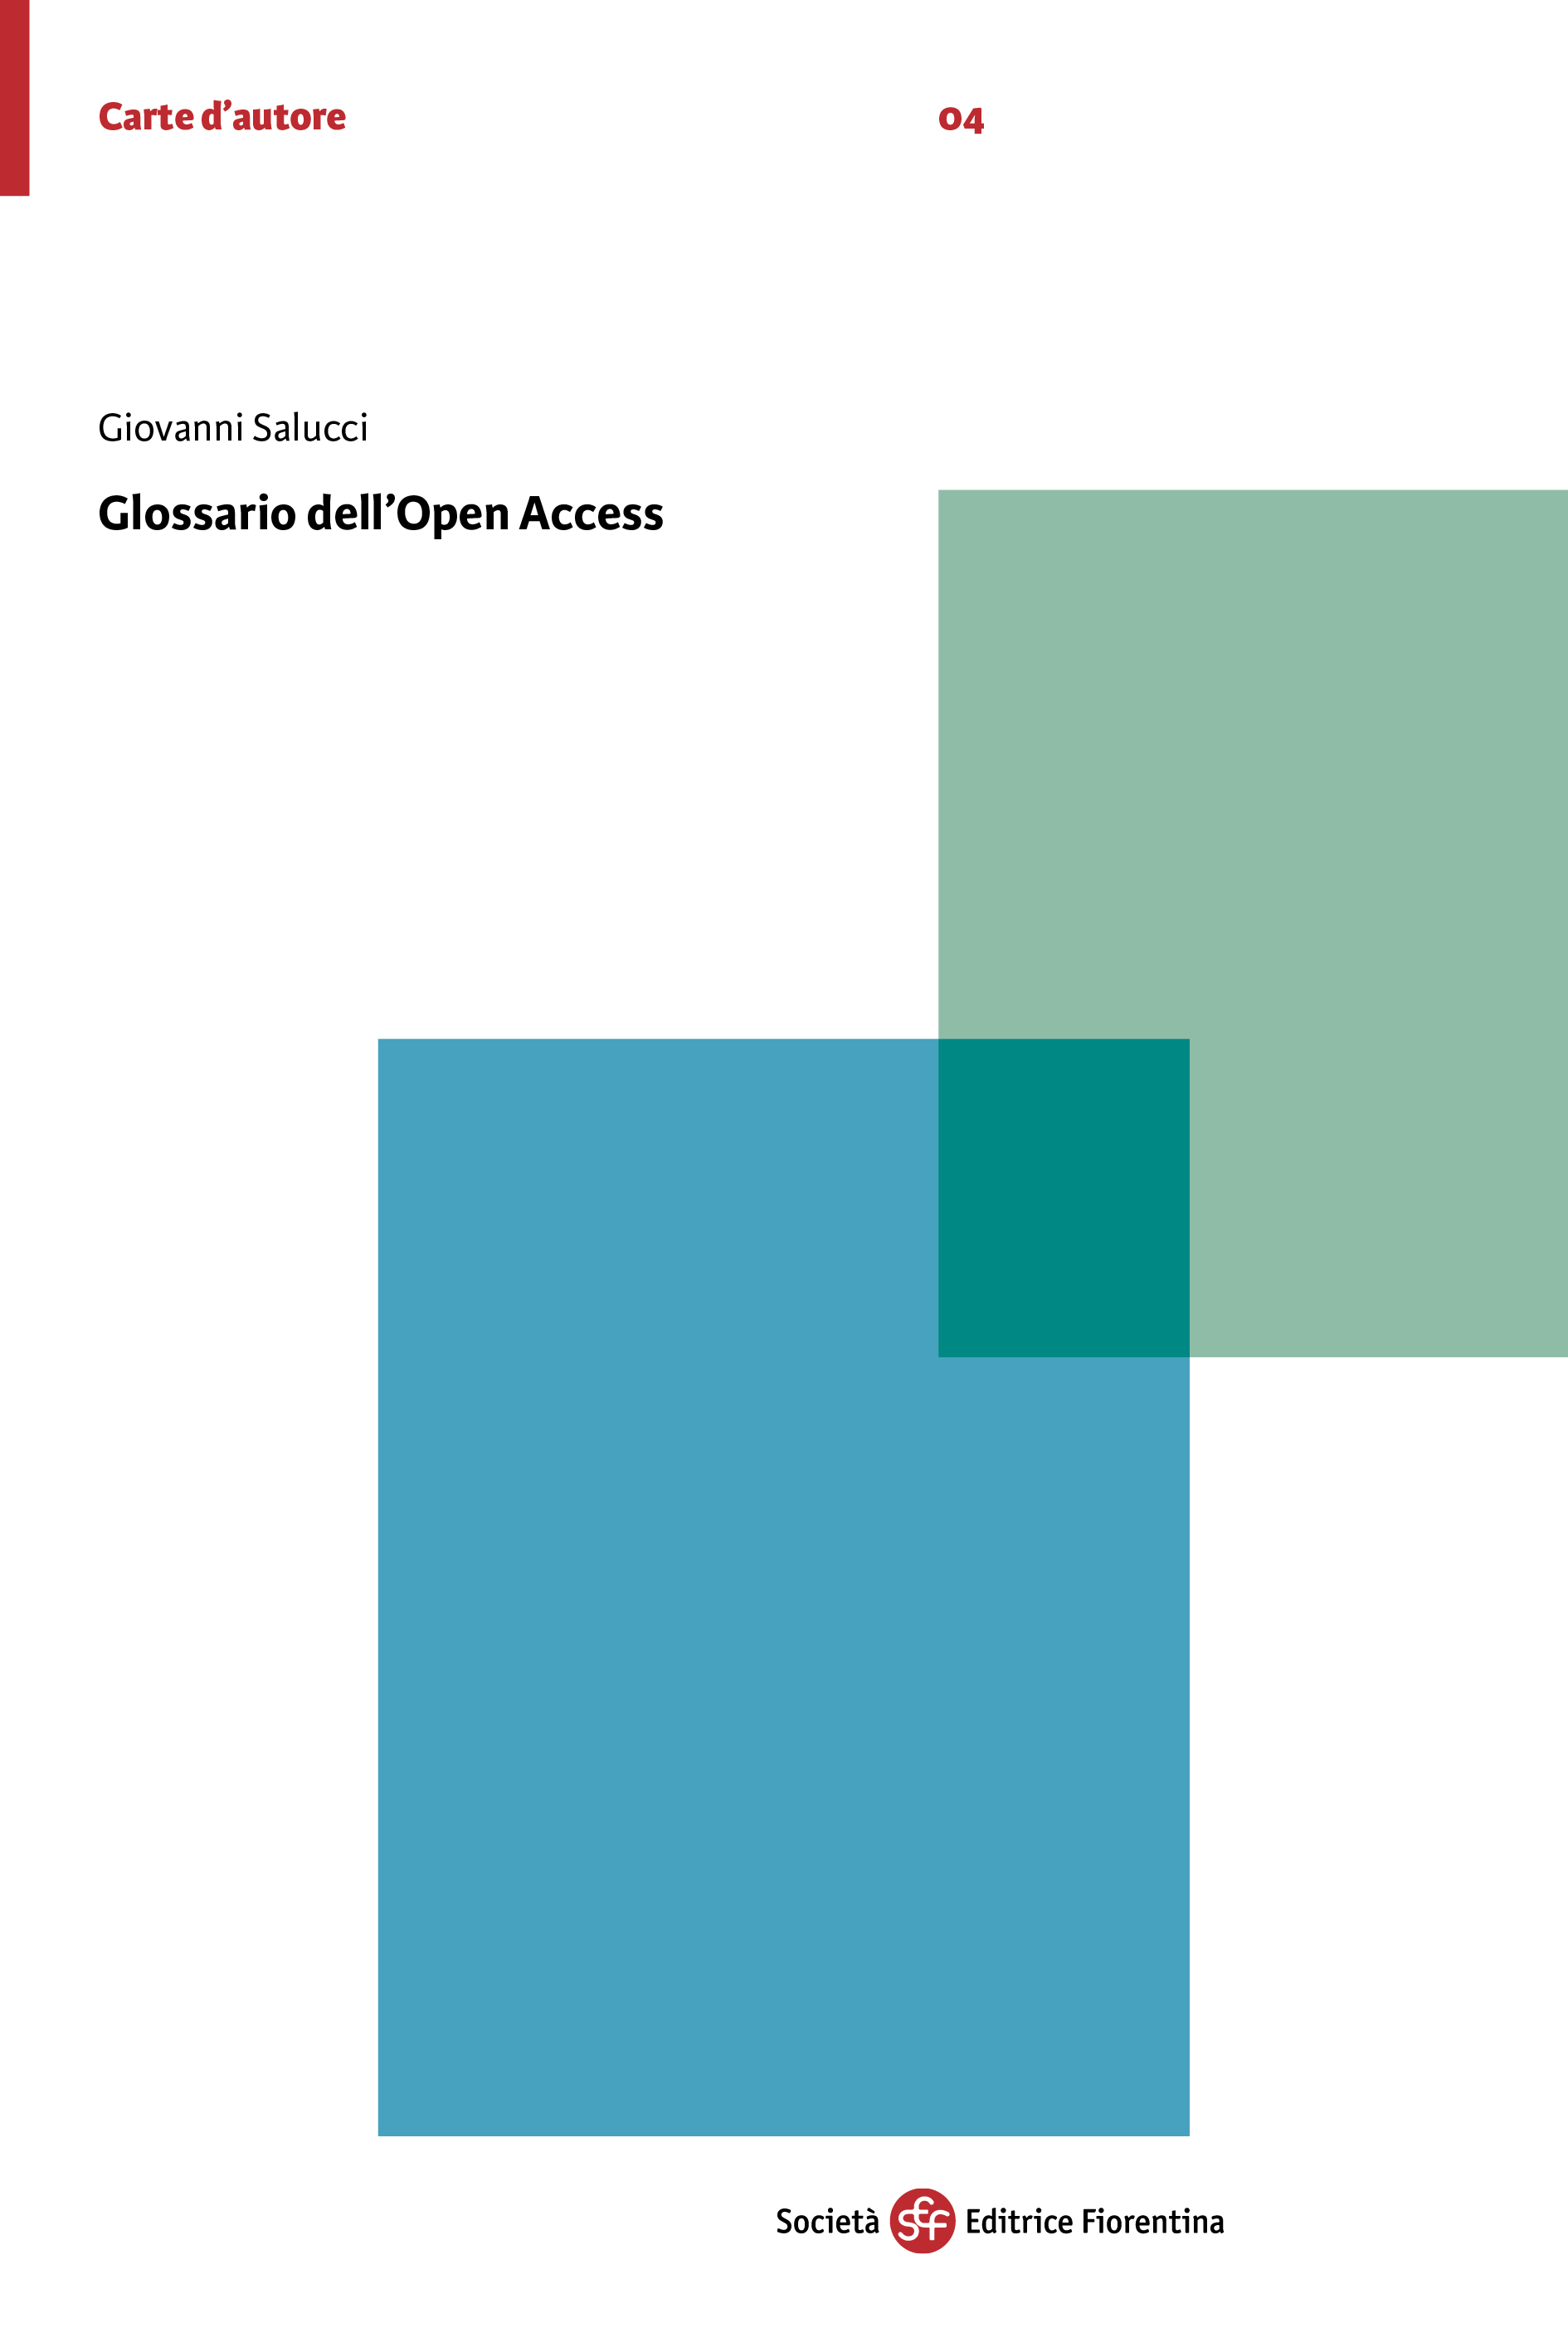 Glossario dell'Open Access